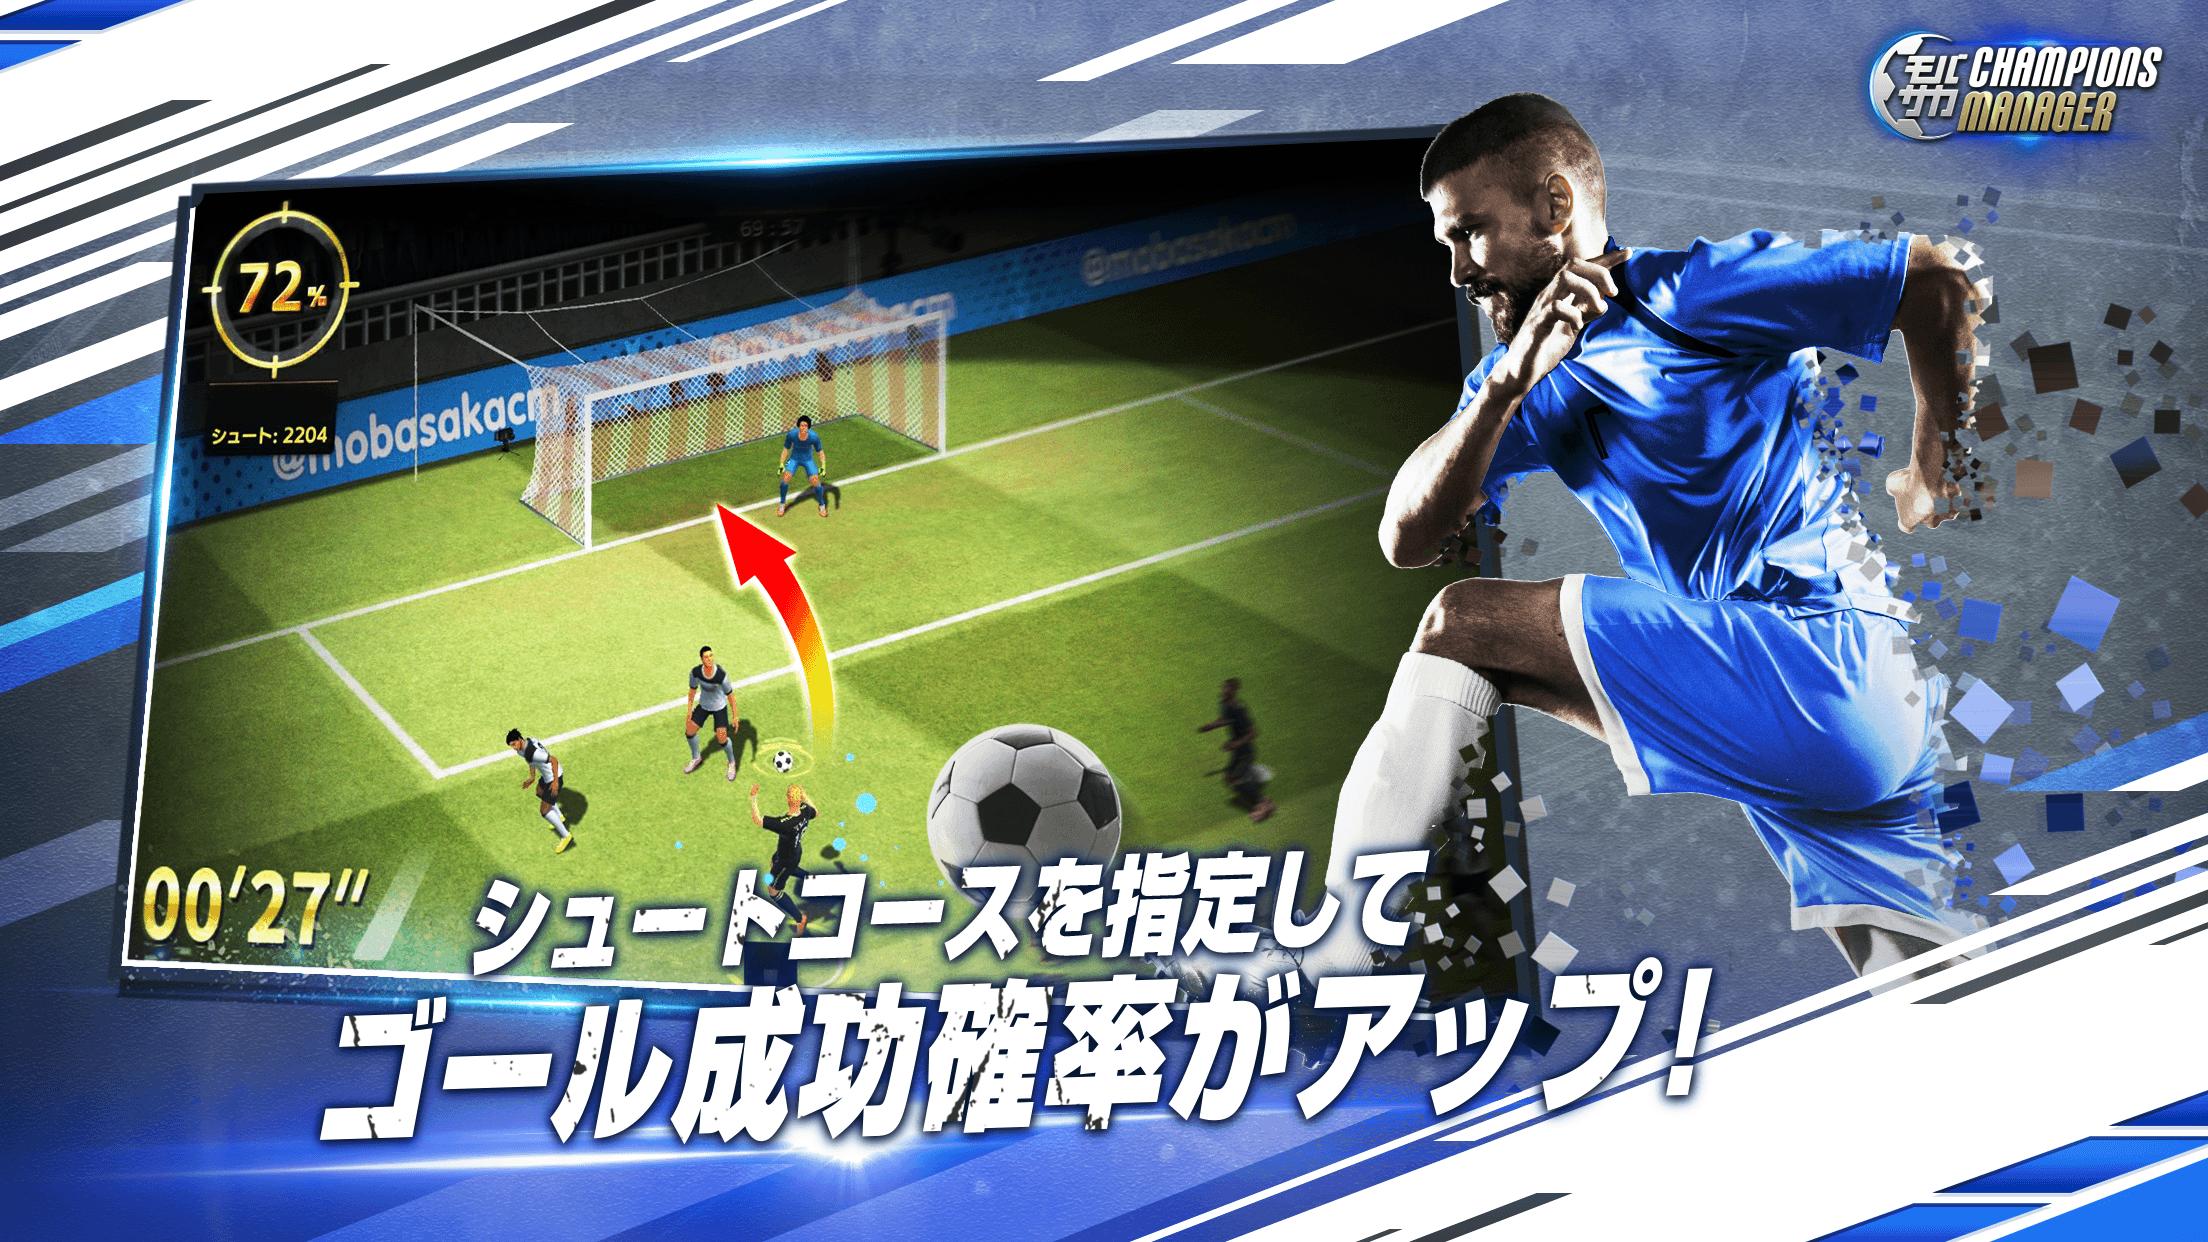 Android 用の モバサカ Champions Manager 決断するサッカーゲーム Apk をダウンロード